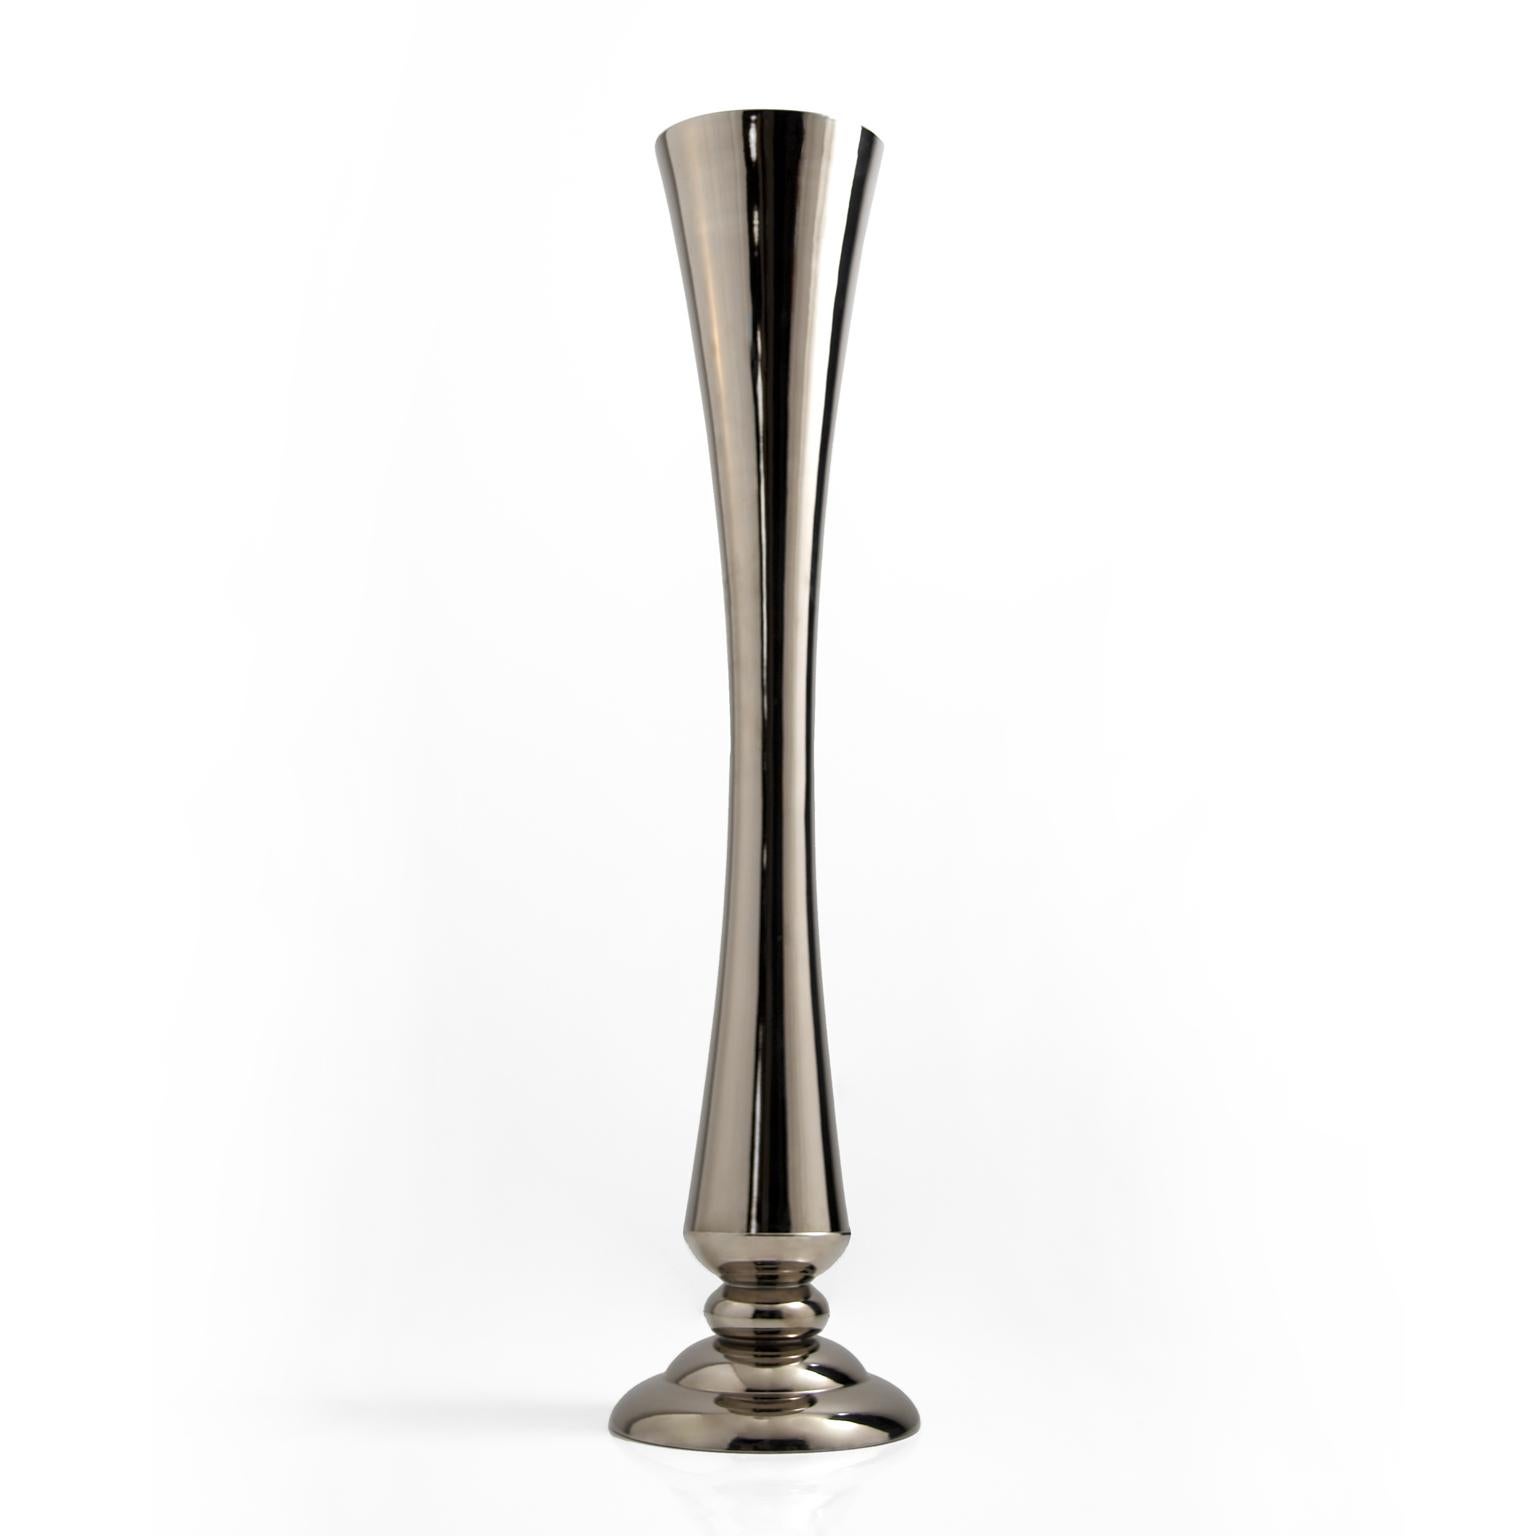  FLUTE- Ceramic vase fully handcrafted in platinum

code VS211 
measures: Height 140.0 cm. - diameter 27.0 cm.